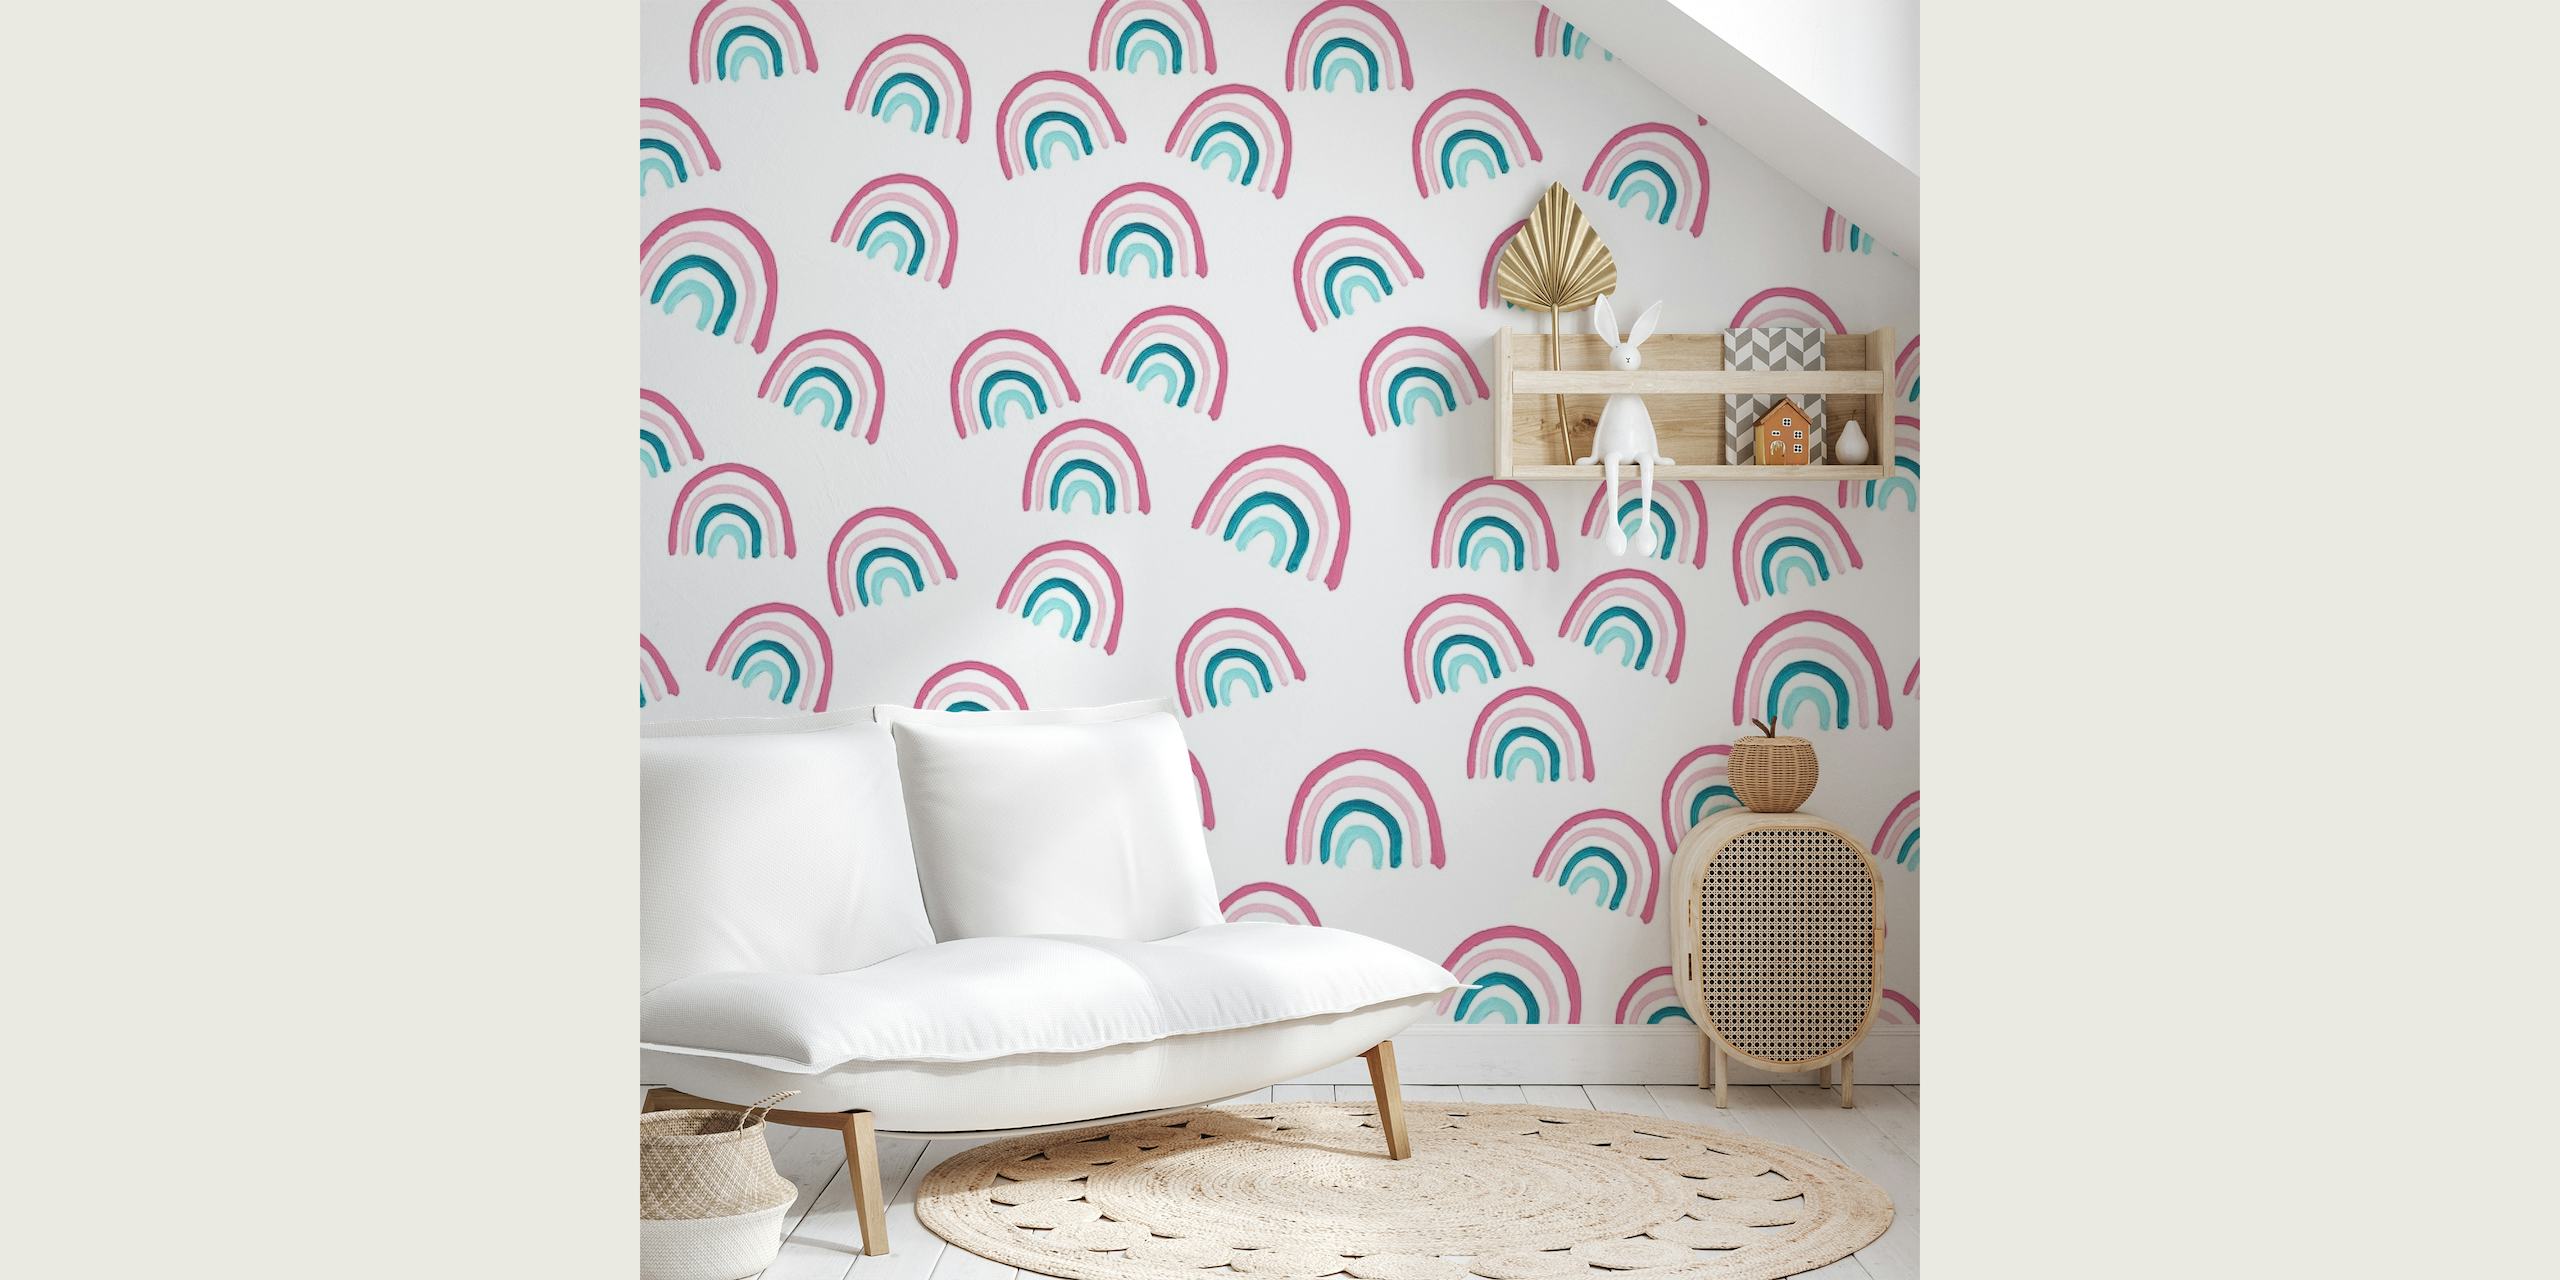 Fotomural vinílico de parede com padrão de arco-íris pastel com rosa suave e azul-petróleo em um fundo branco